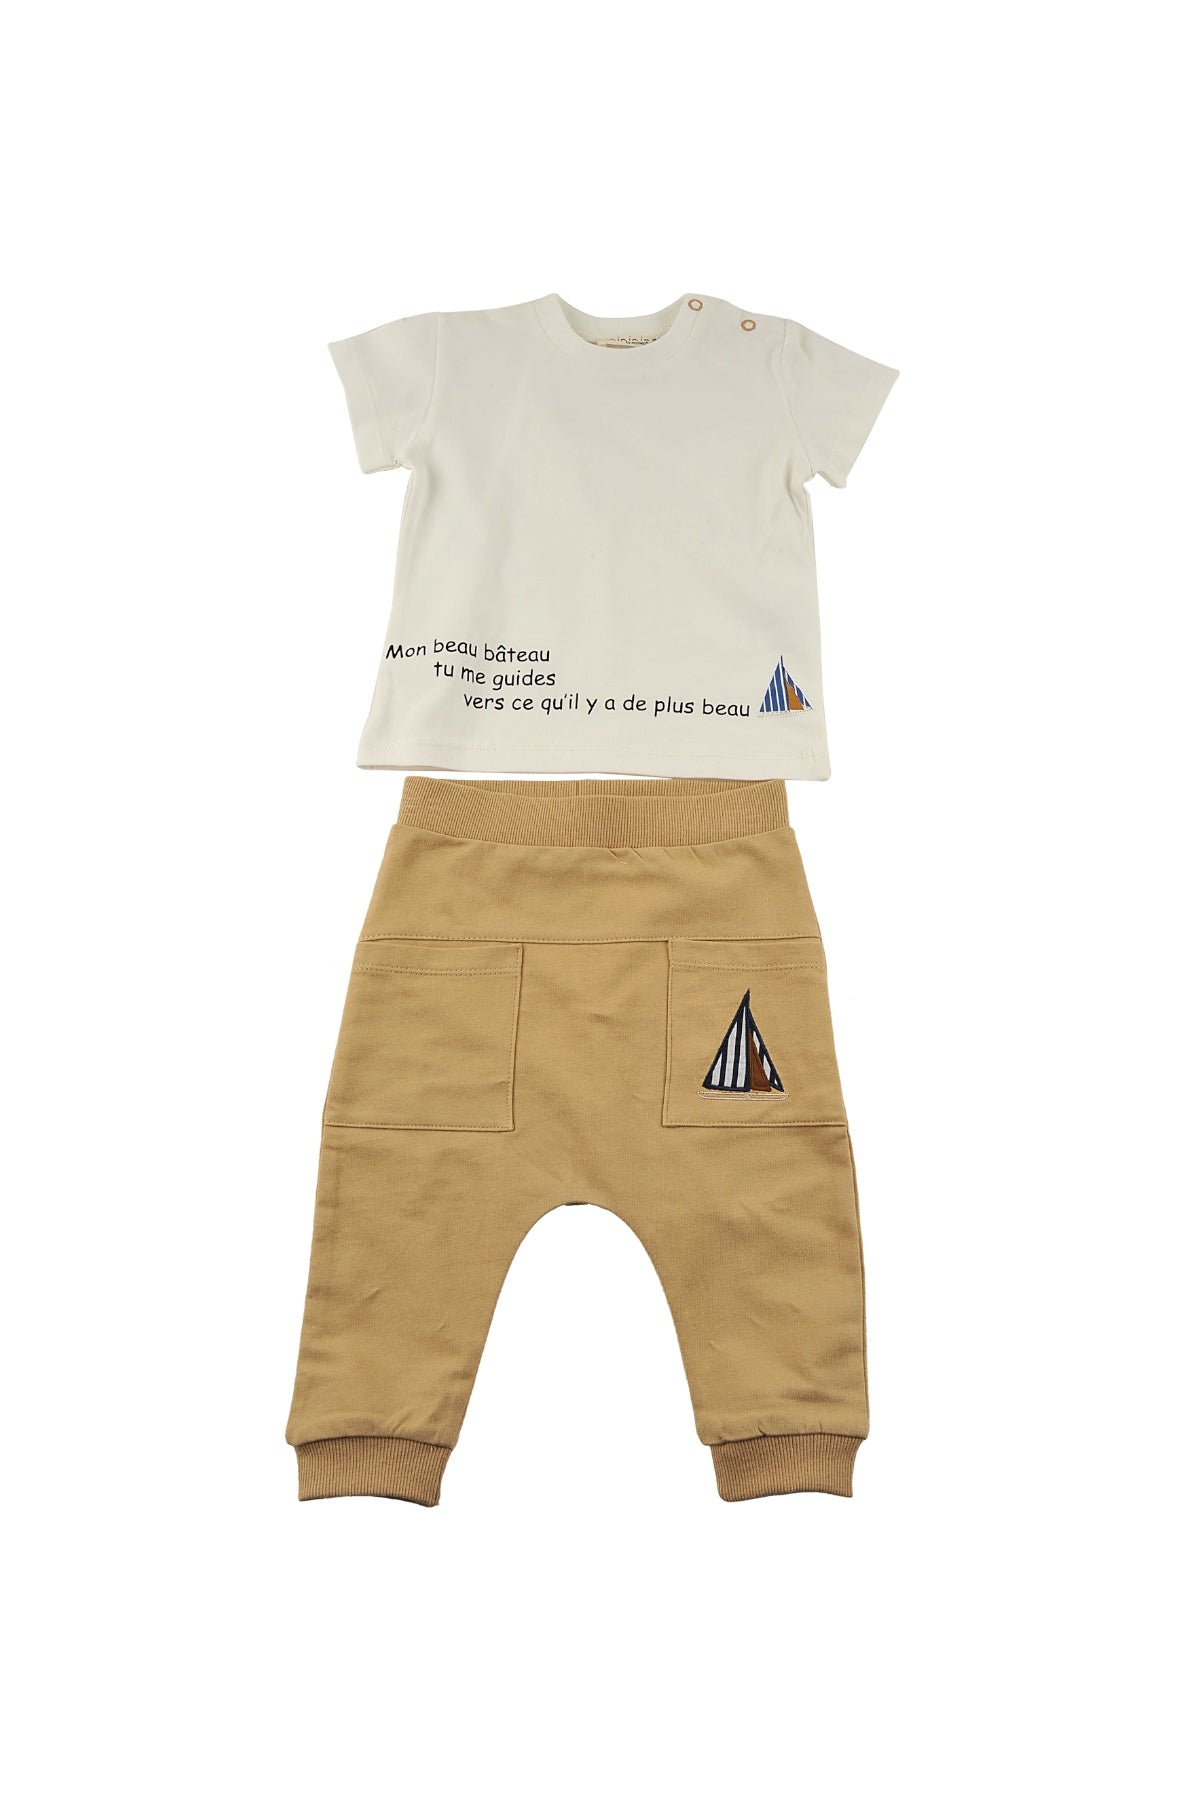 Erkek Bebek Mon Beau Bateau Yelkenli T-Shirt ve Cepli Nakışlı Alt Takım (6ay-4yaş)-2